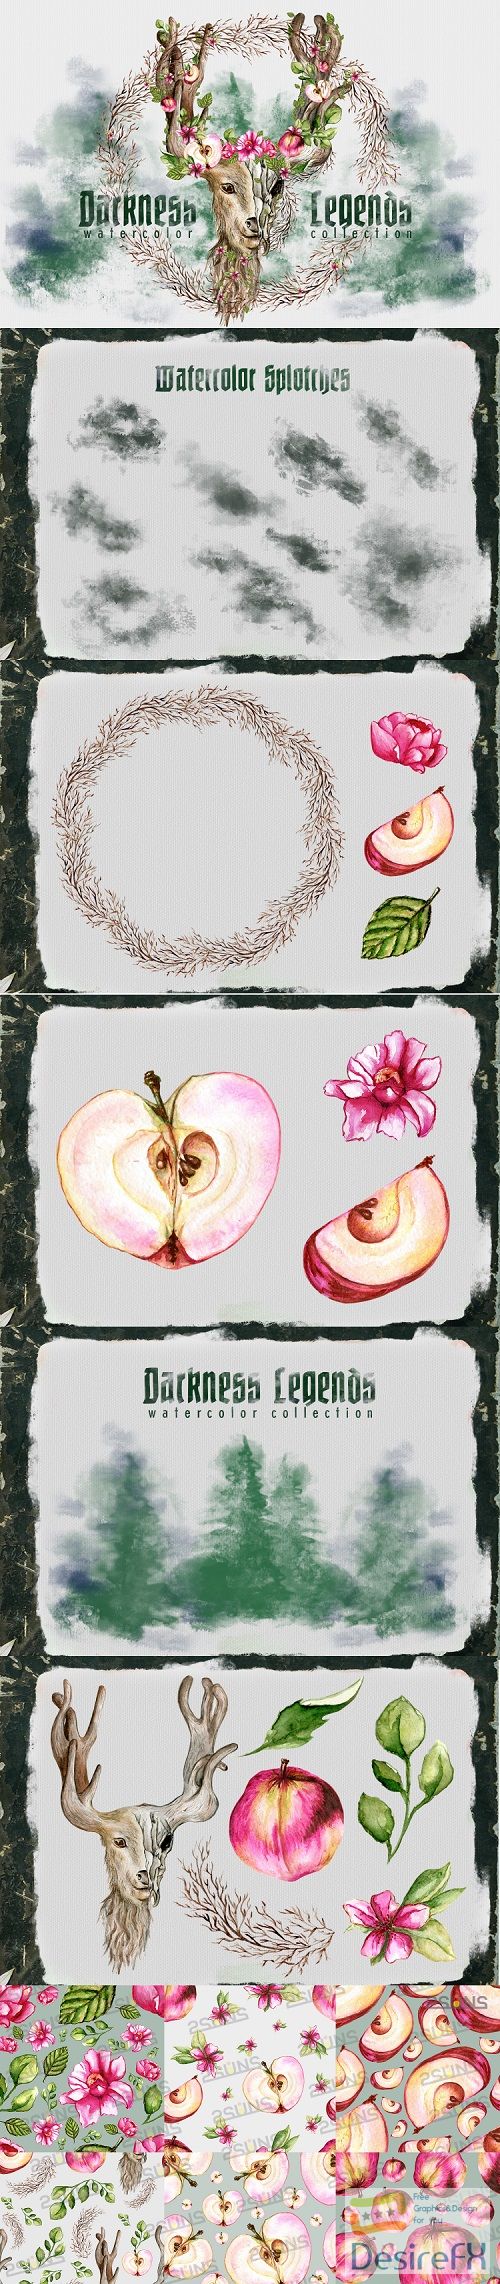 Darkness Legends Watercolor illustration png apple floral  - 486883